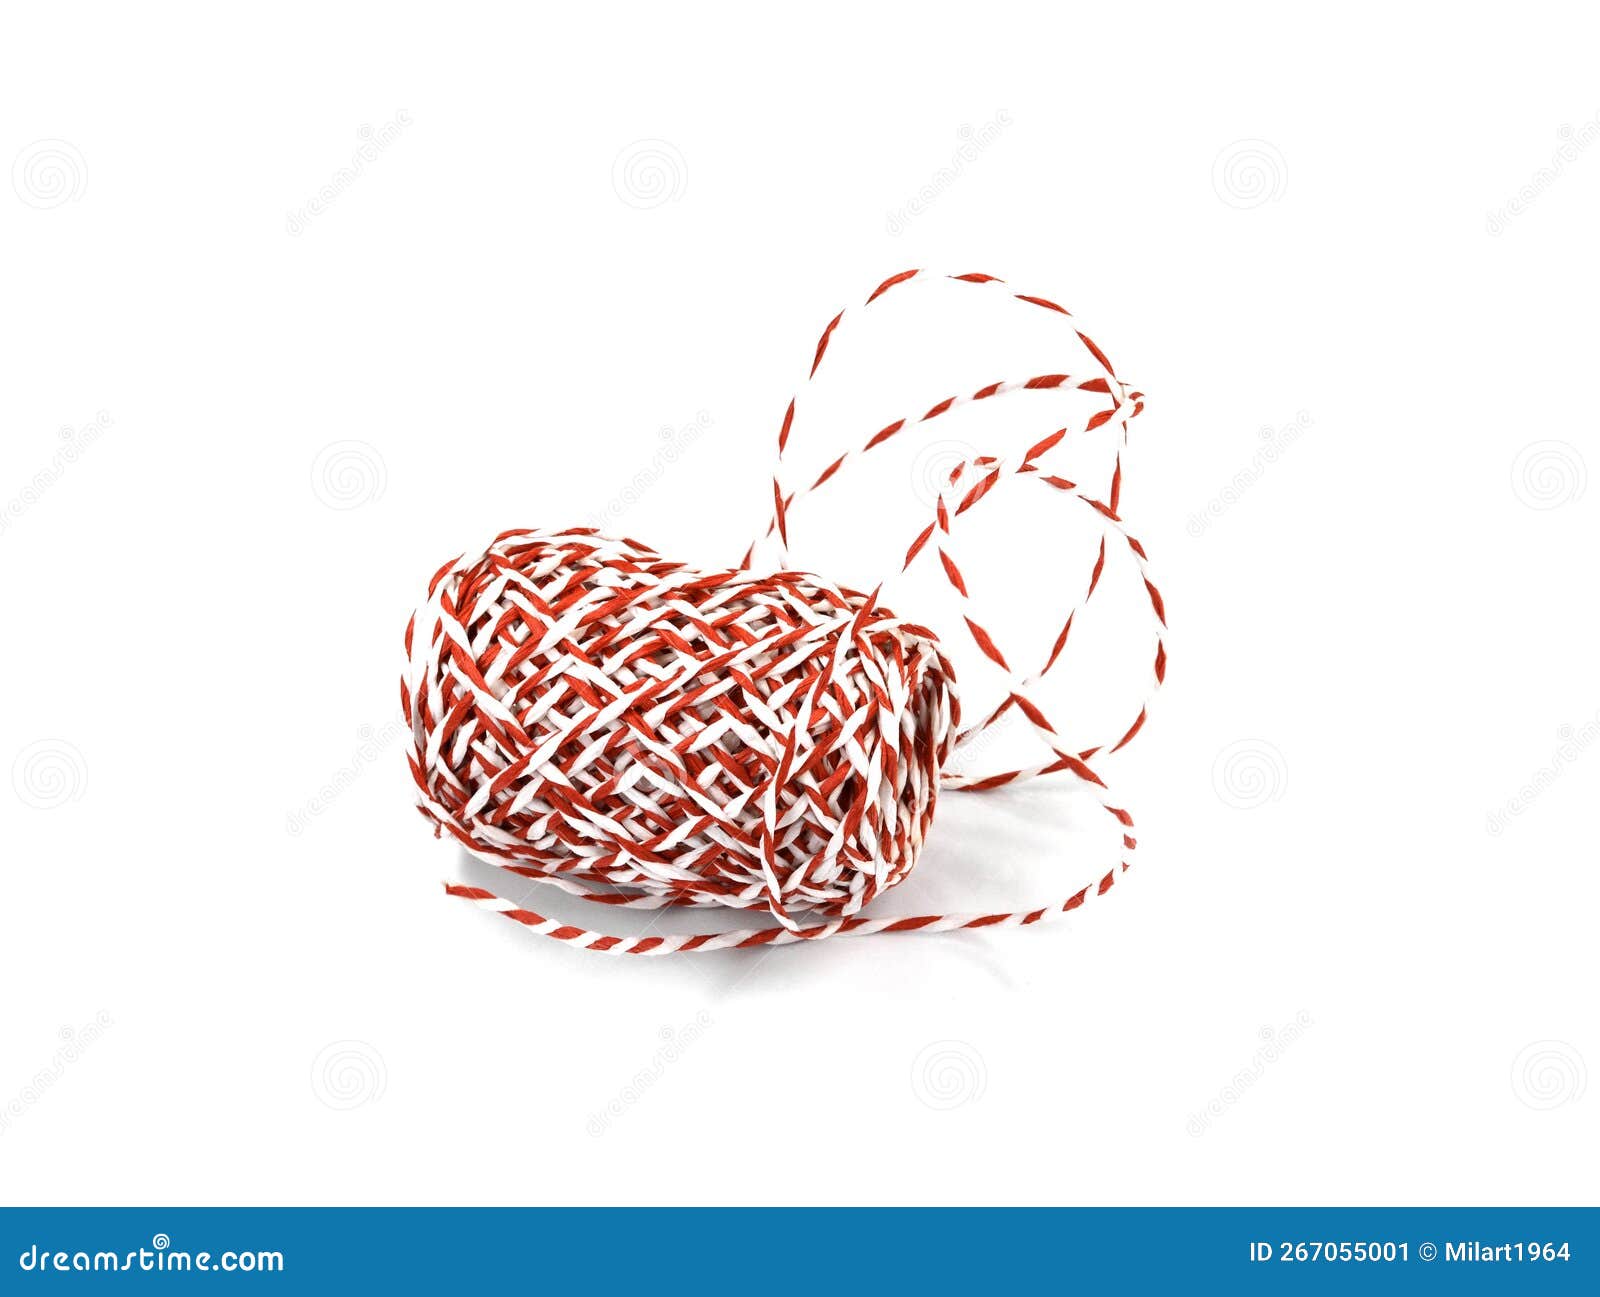 Baker's Yarn, Red-White